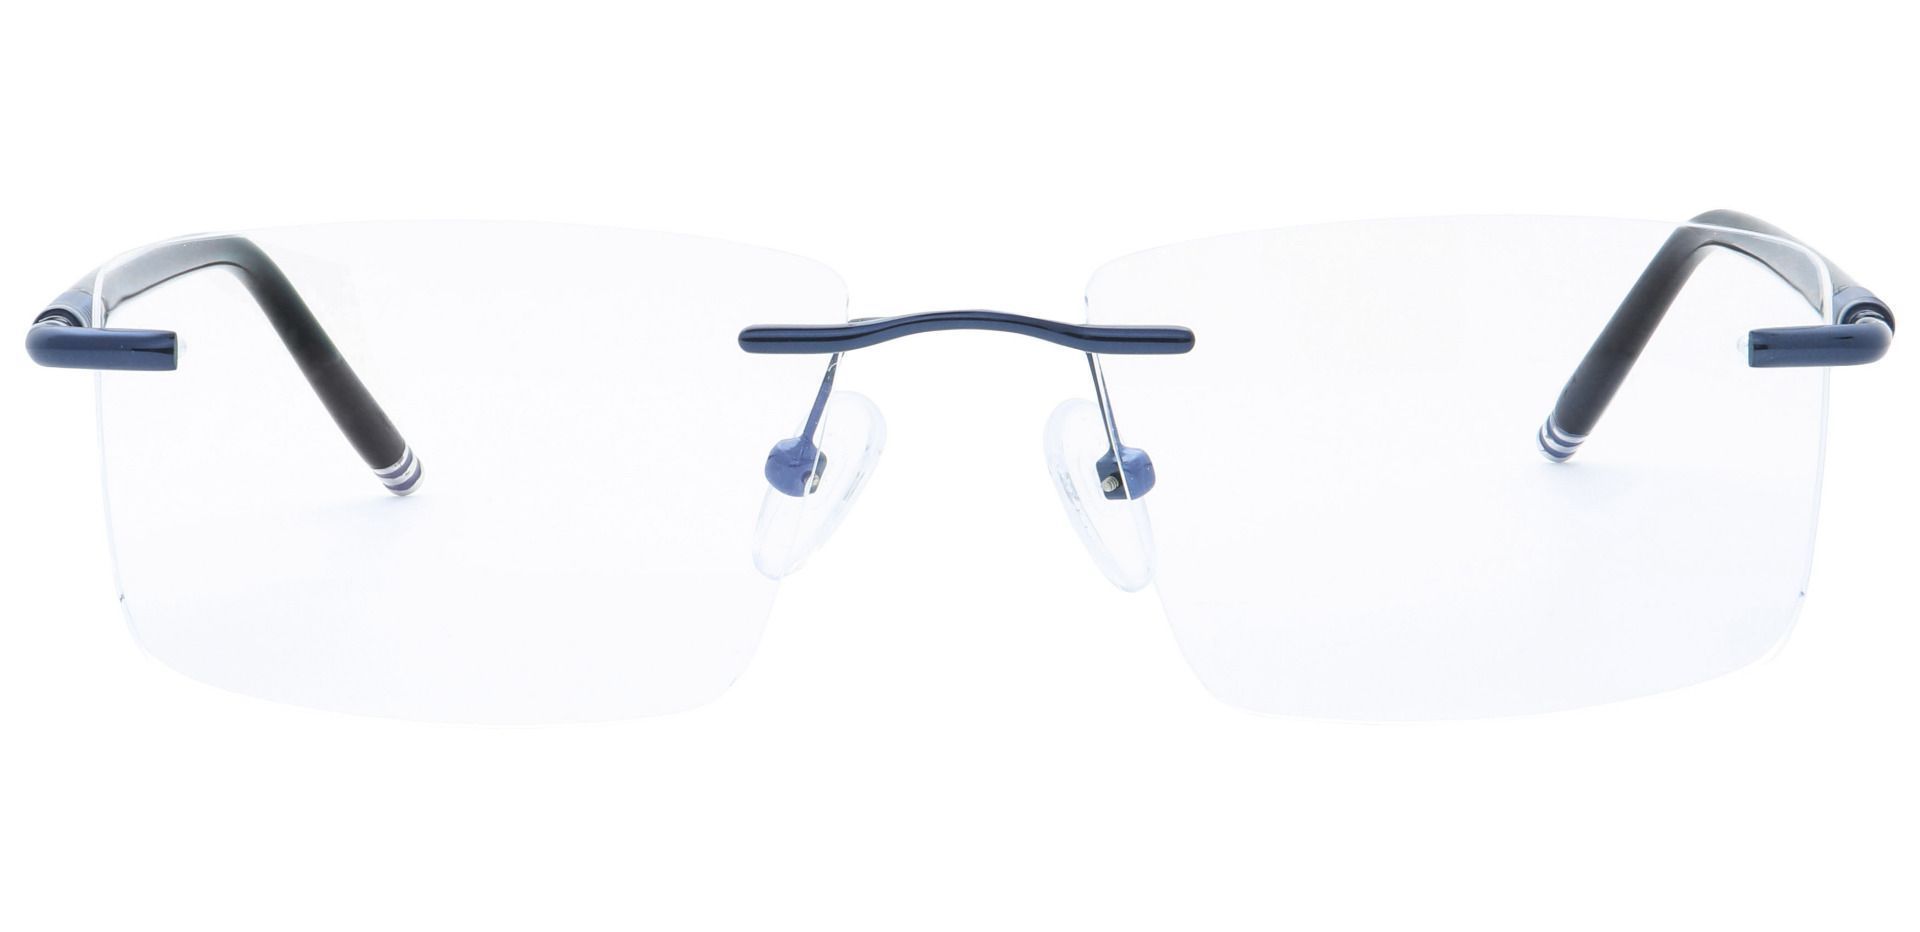 Kenobi Rimless Lined Bifocal Glasses - Blue